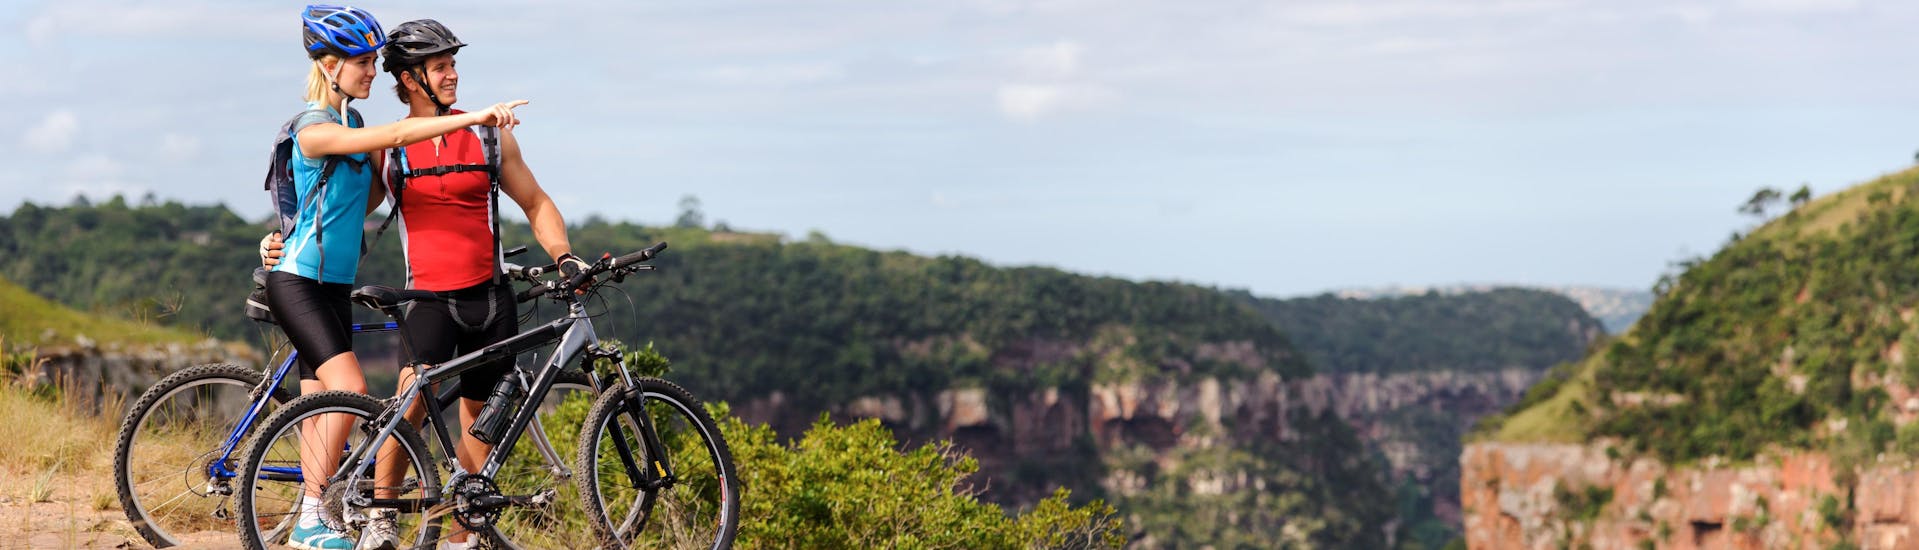 Ein Paar legt während einer Mountain Bike Tour durch das Hinterland Dalmatiens eine Pause ein, um die Aussicht zu bestaunen.